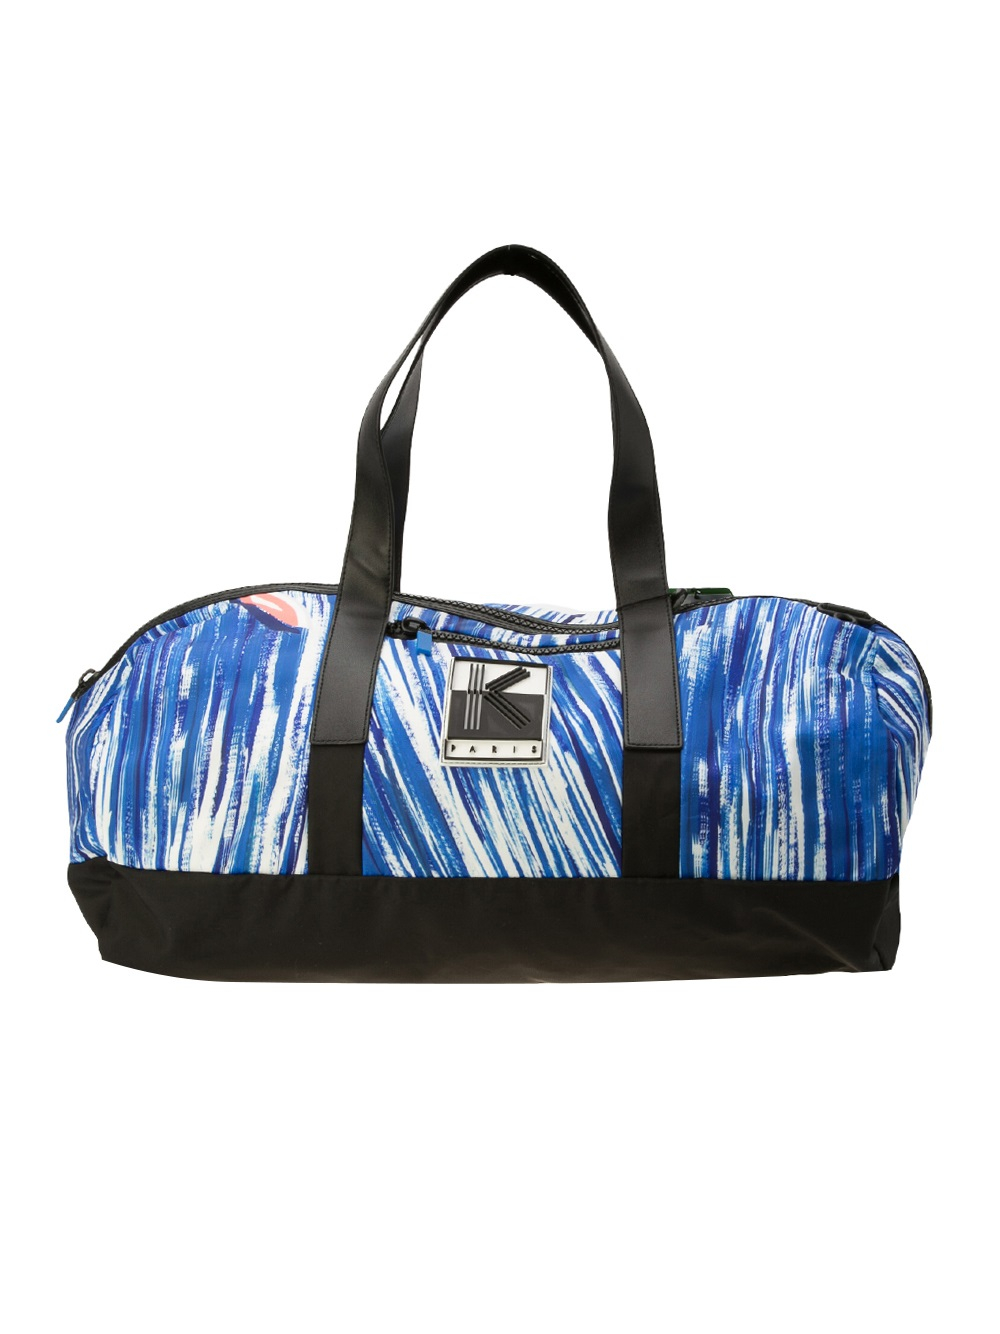 KENZO Travel Bag in Blue for Men - Lyst